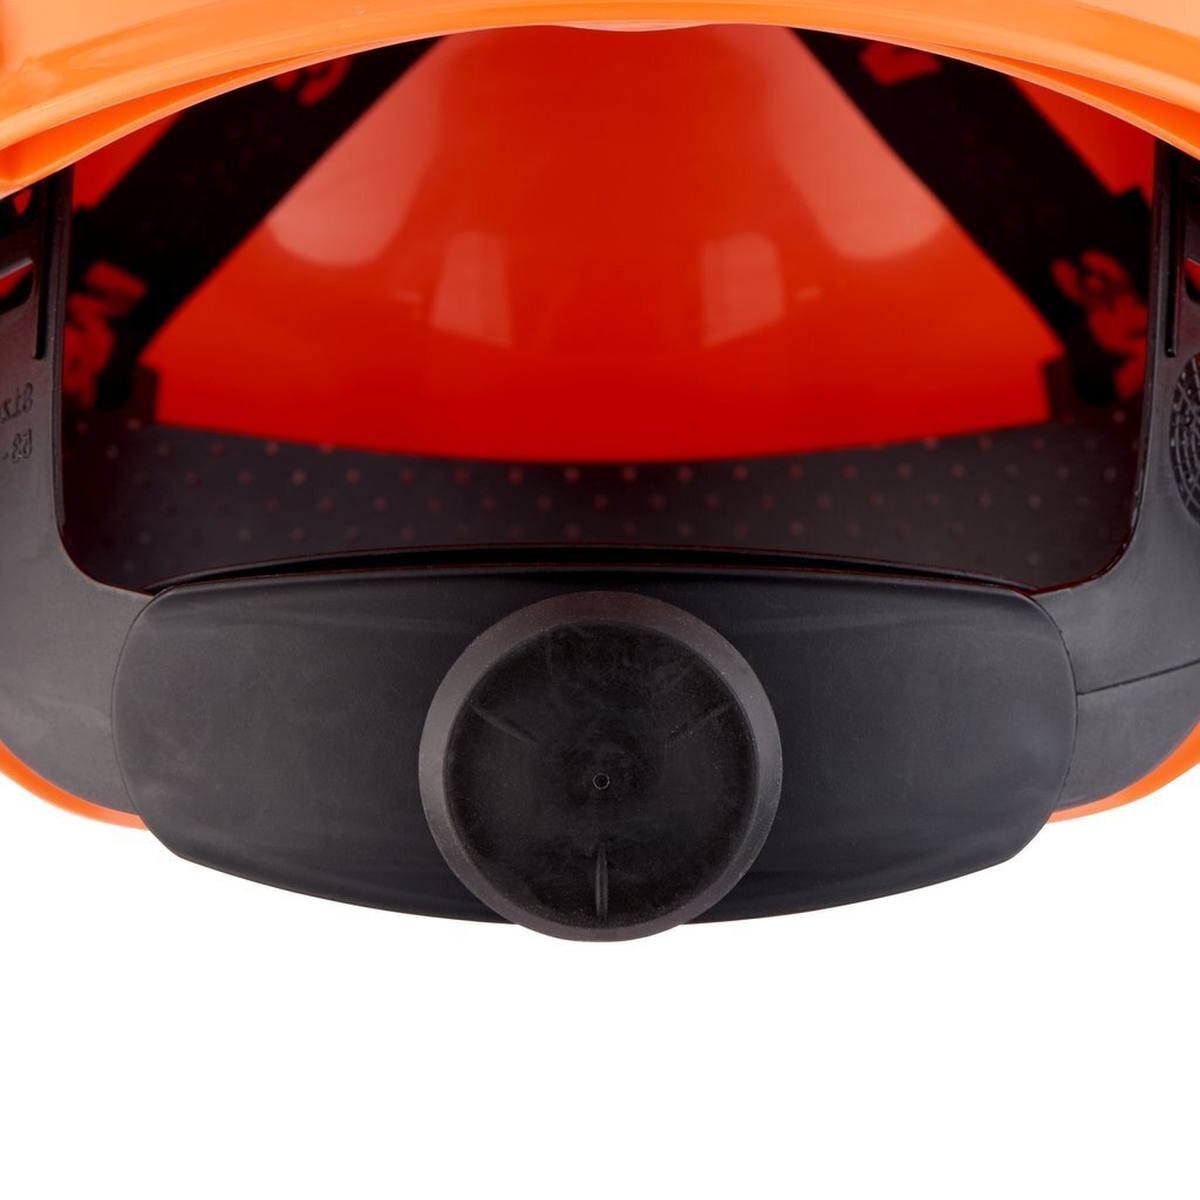 elmetto di sicurezza 3M serie H700 H-700N-OR in arancione, ventilato, con cricchetto e cinturino in plastica per saldatura